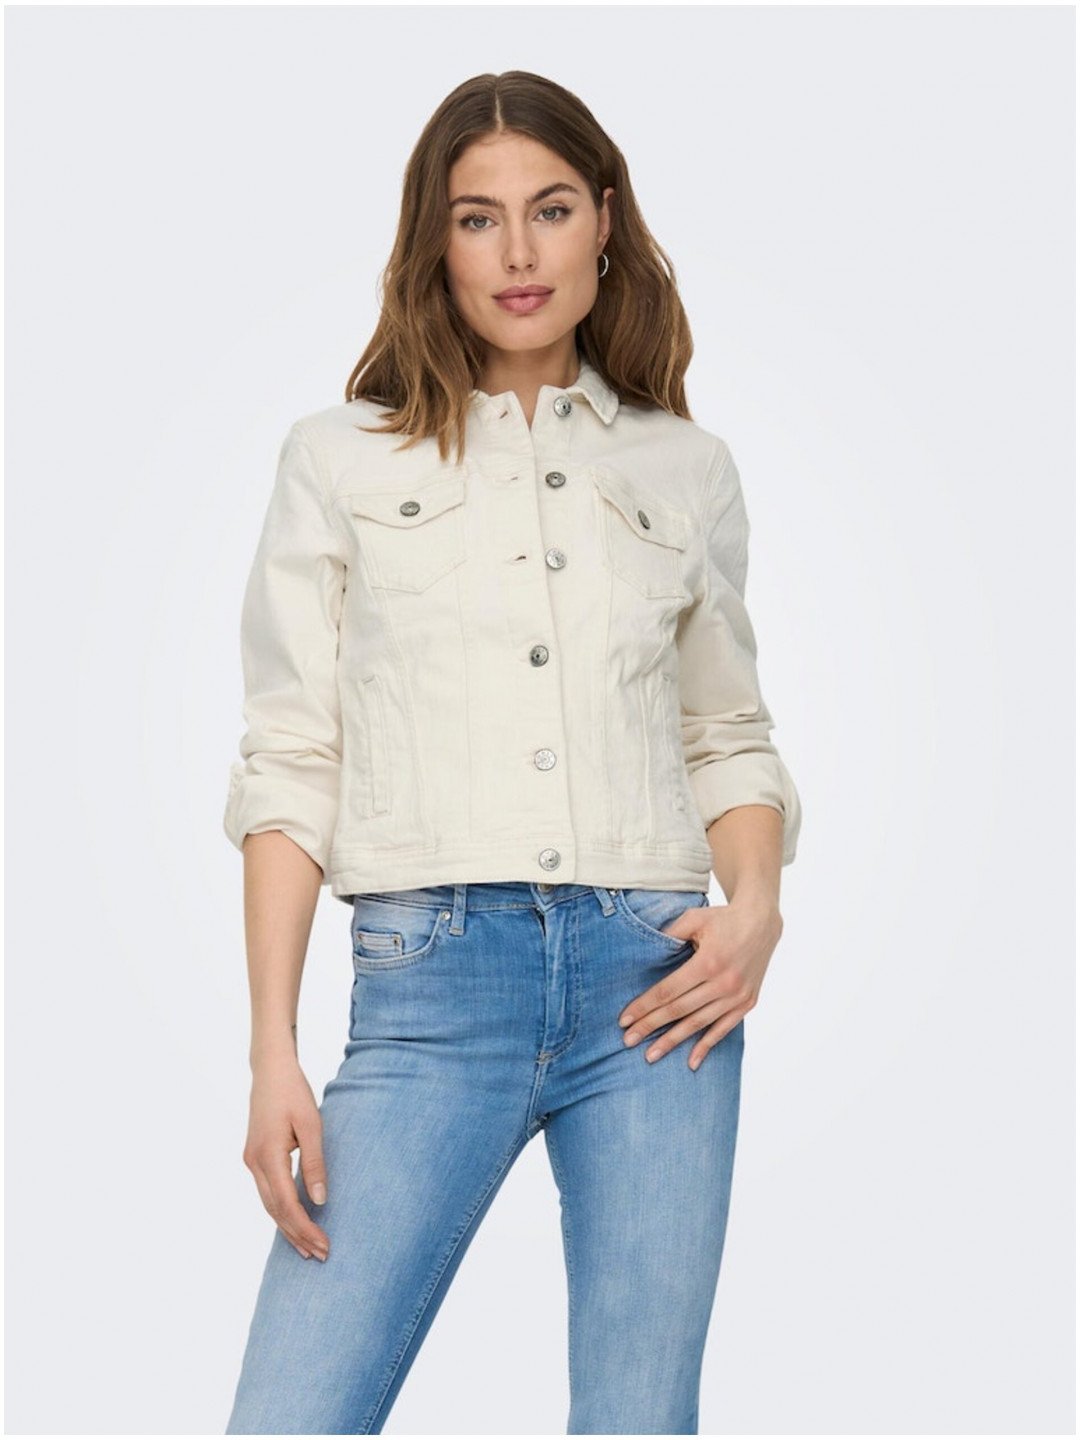 Krémová dámská džínová bunda ONLY Tia